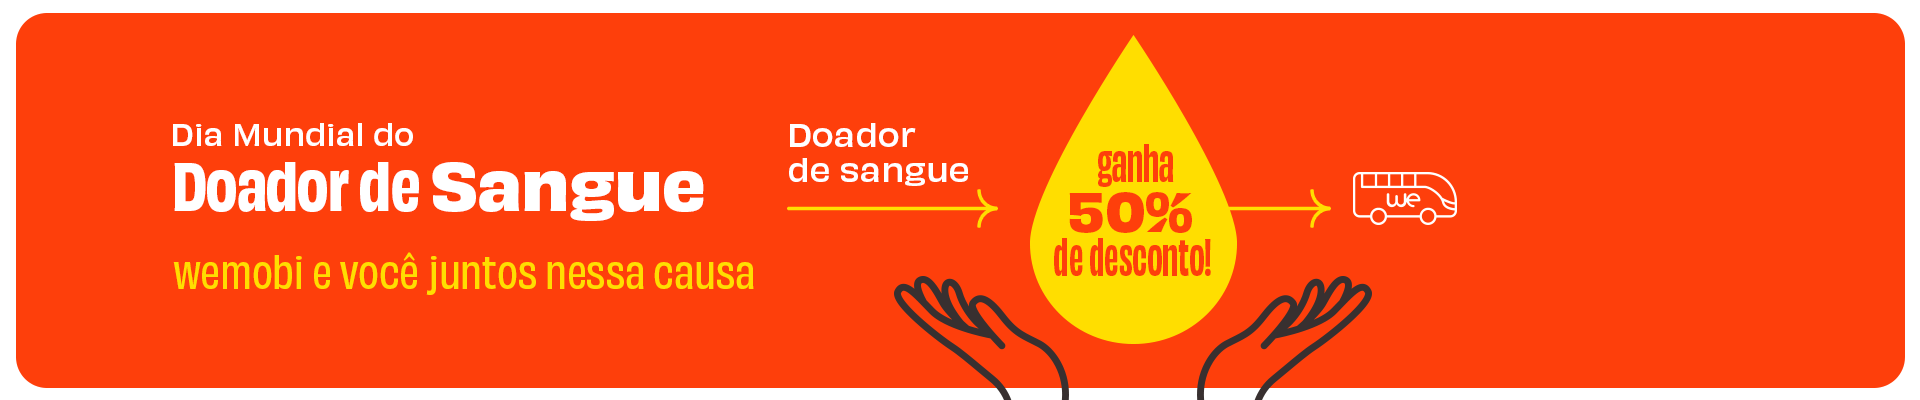 Dia Mundial do Doador de Sangue - wemobi e você juntos nessa causa!  Doador de sangue ganha 50% de desconto